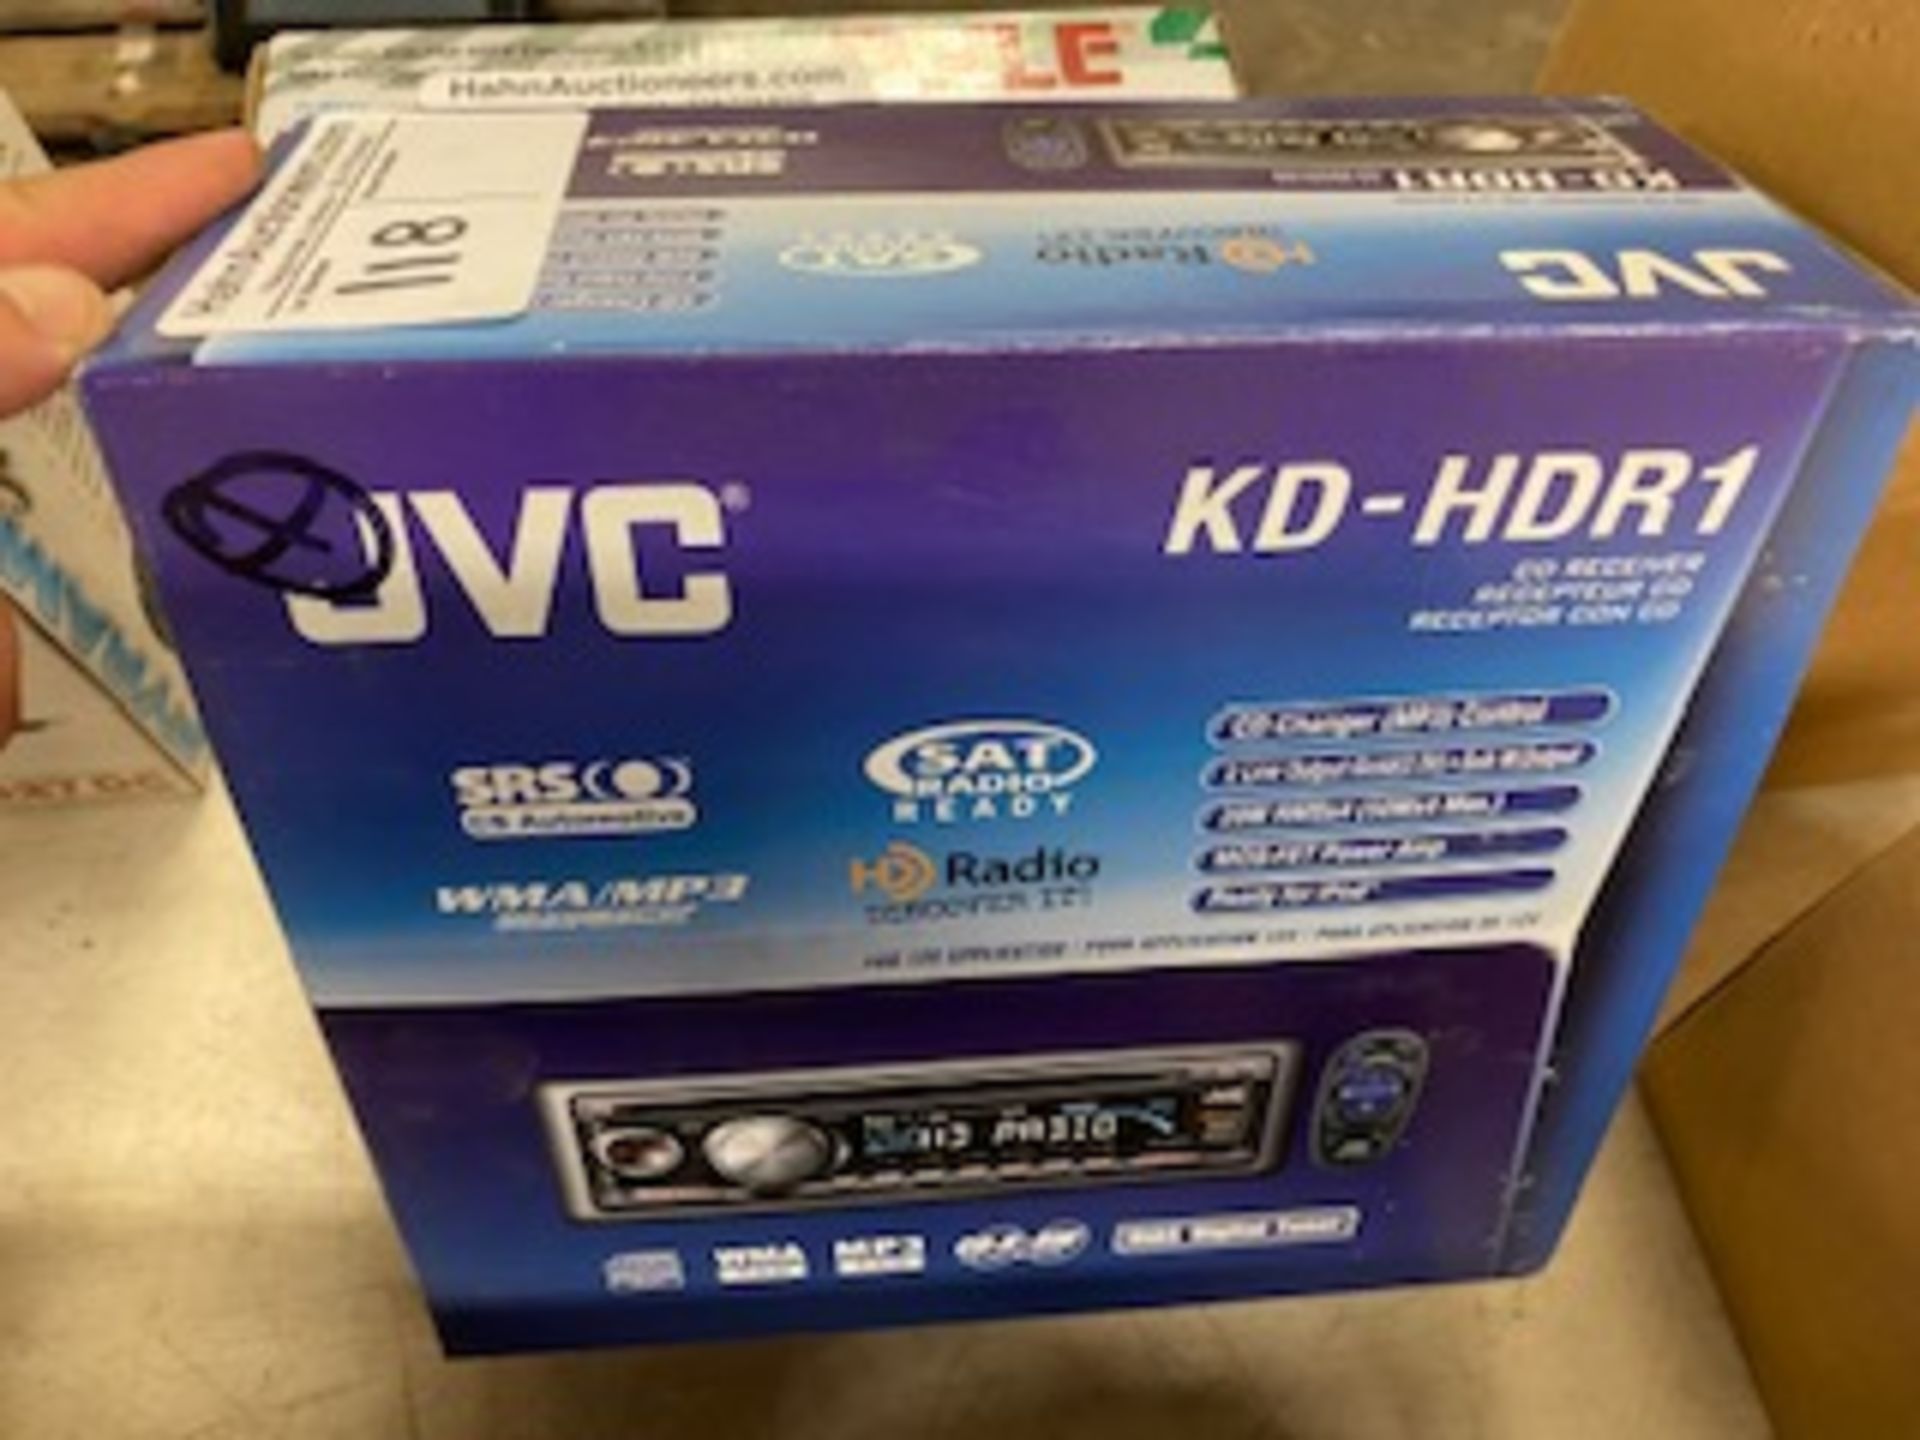 New JVC CD player